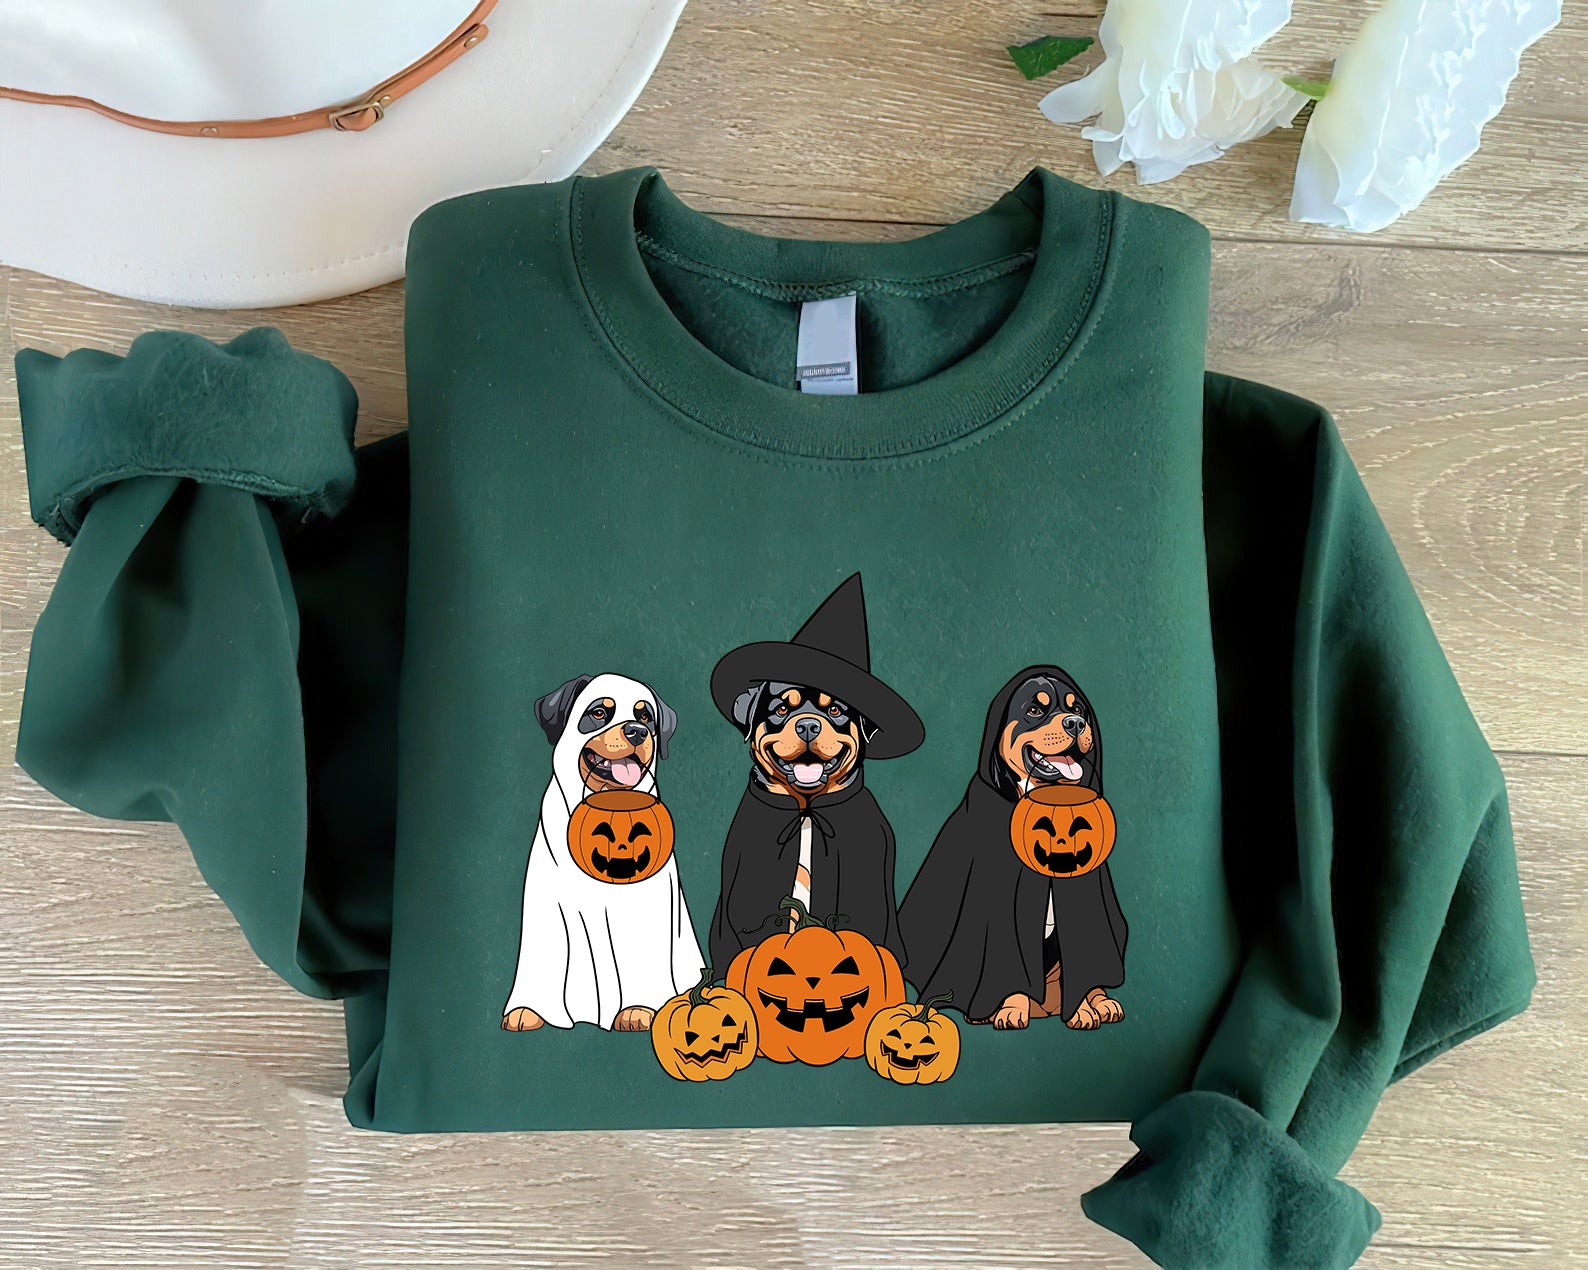 Rottweiler Sweatshirt, Ghost And Witch Rottweiler Sweatshirt, Halloween Dog Shirt, Rottweiler Tee, Dog Sweatshirt